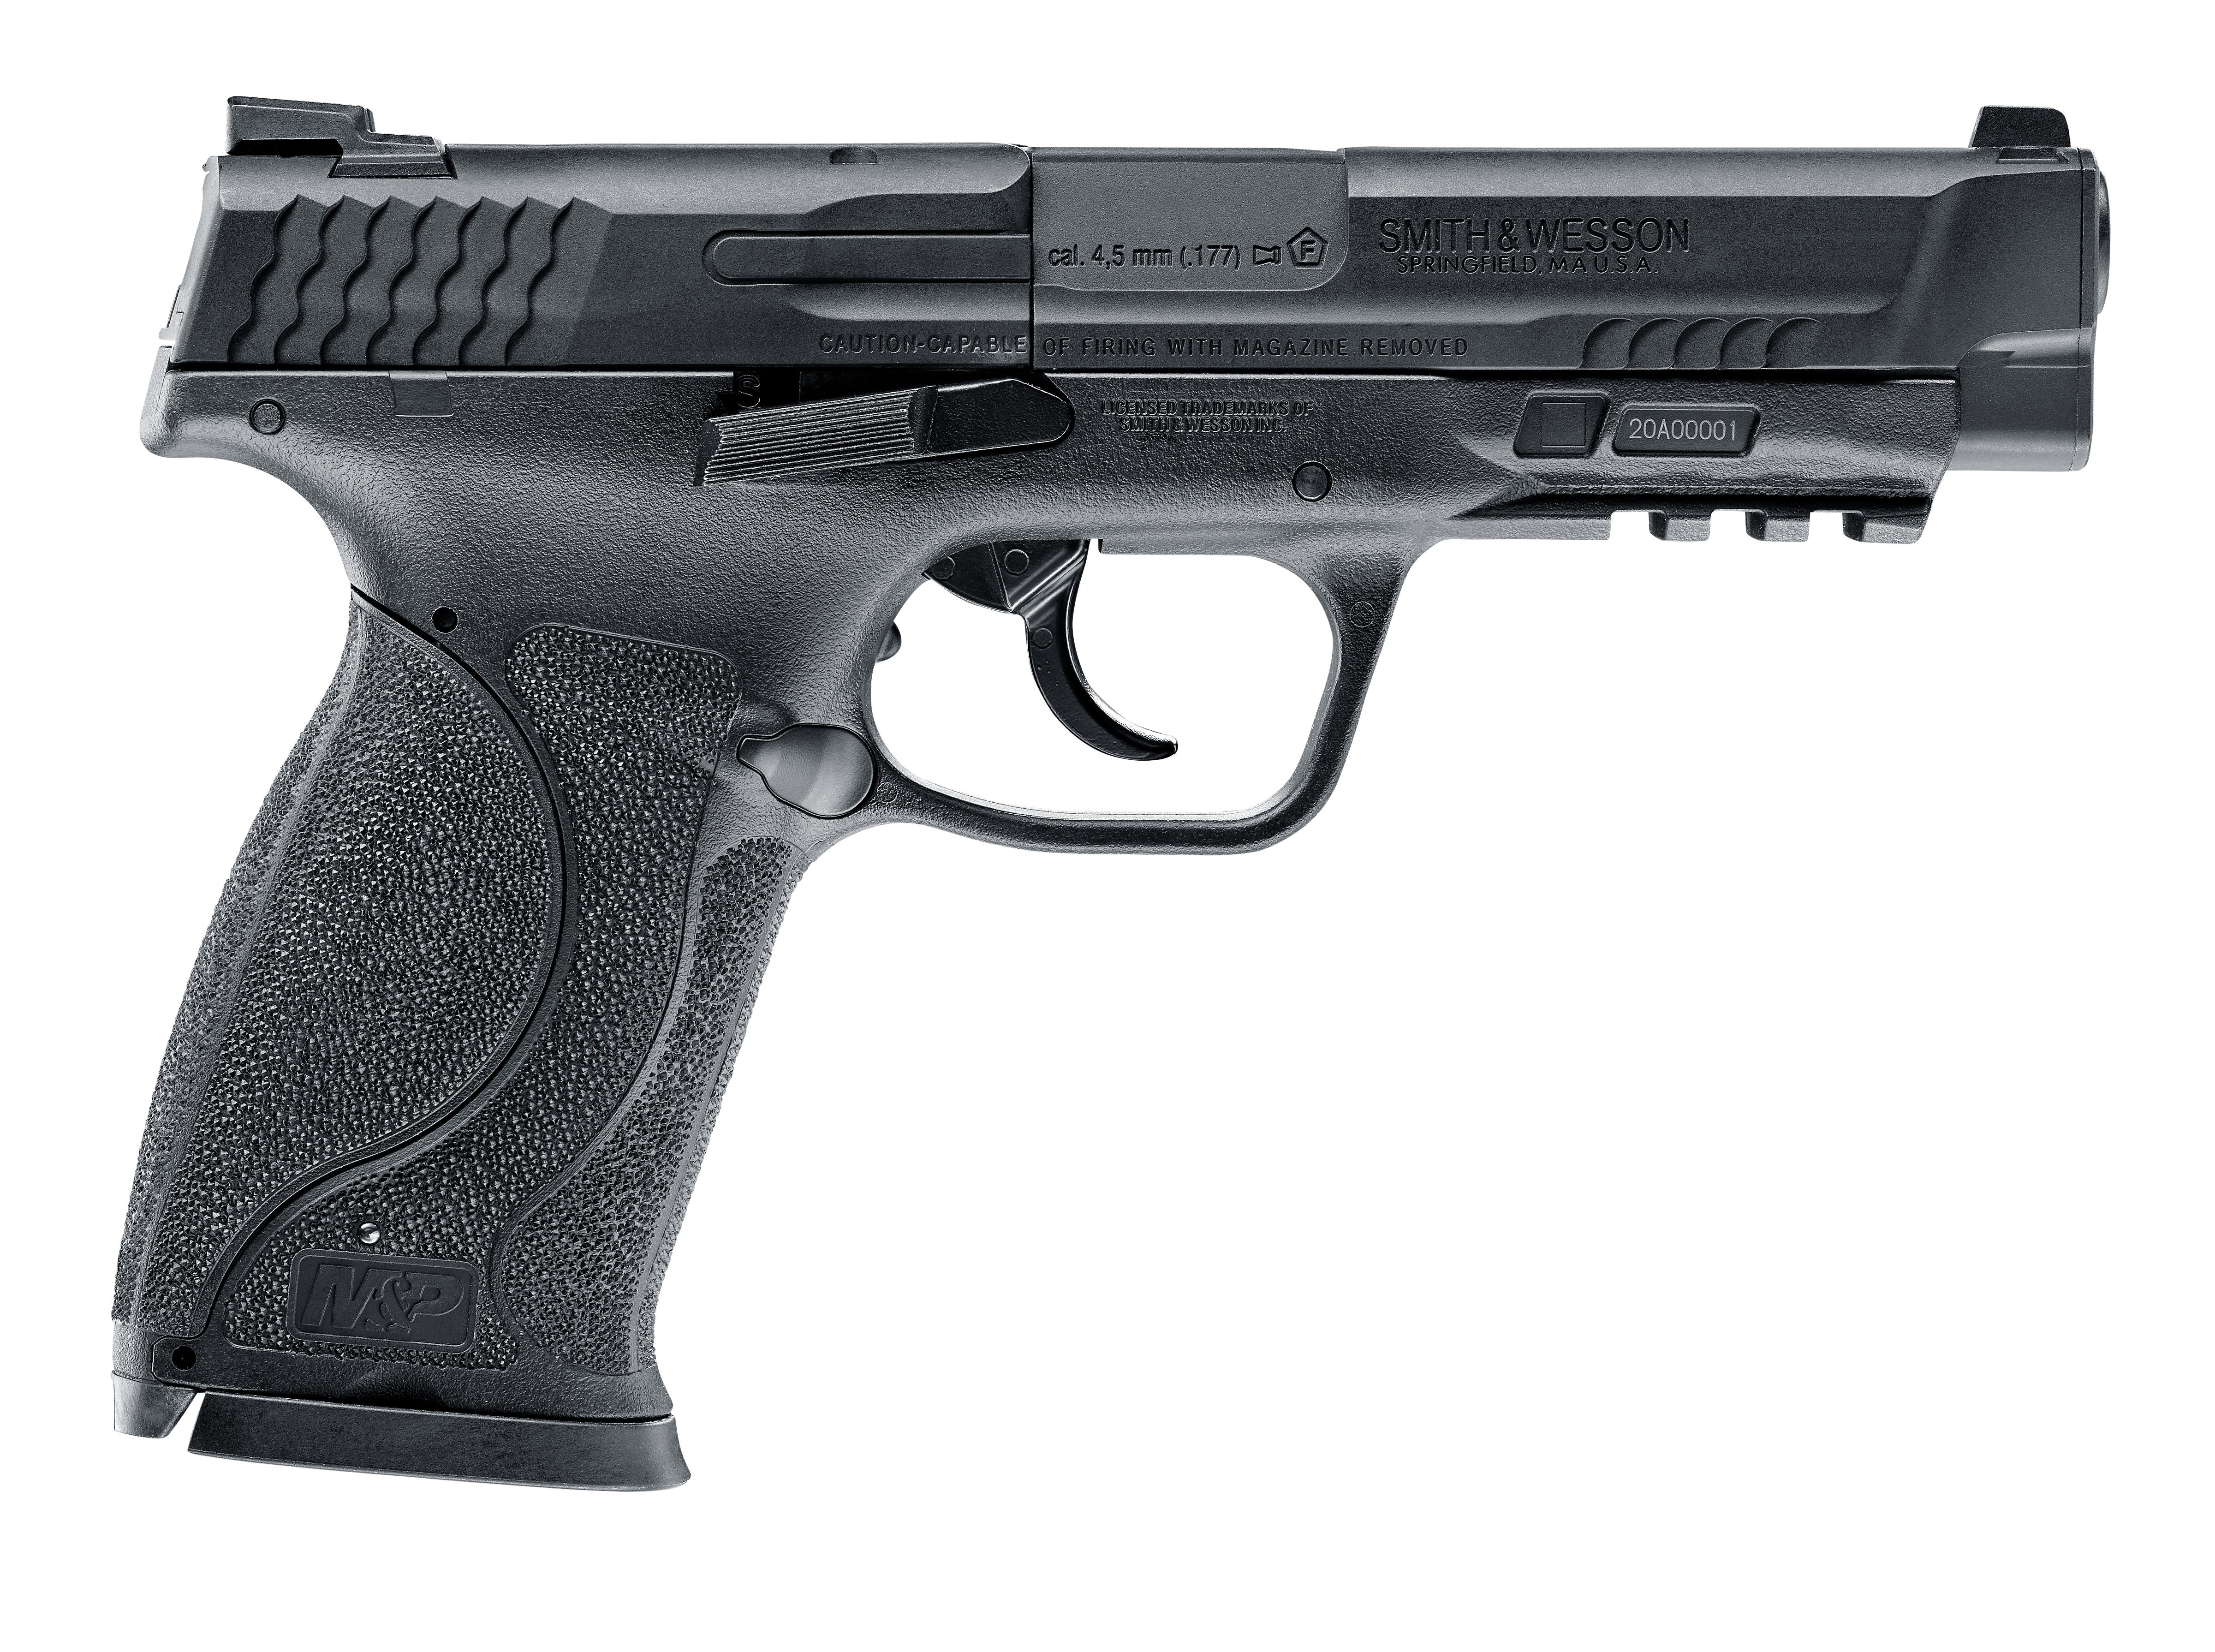 Smith & Wesson M&P 45 M2.0 Pistole, Ansicht von der rechten Seite